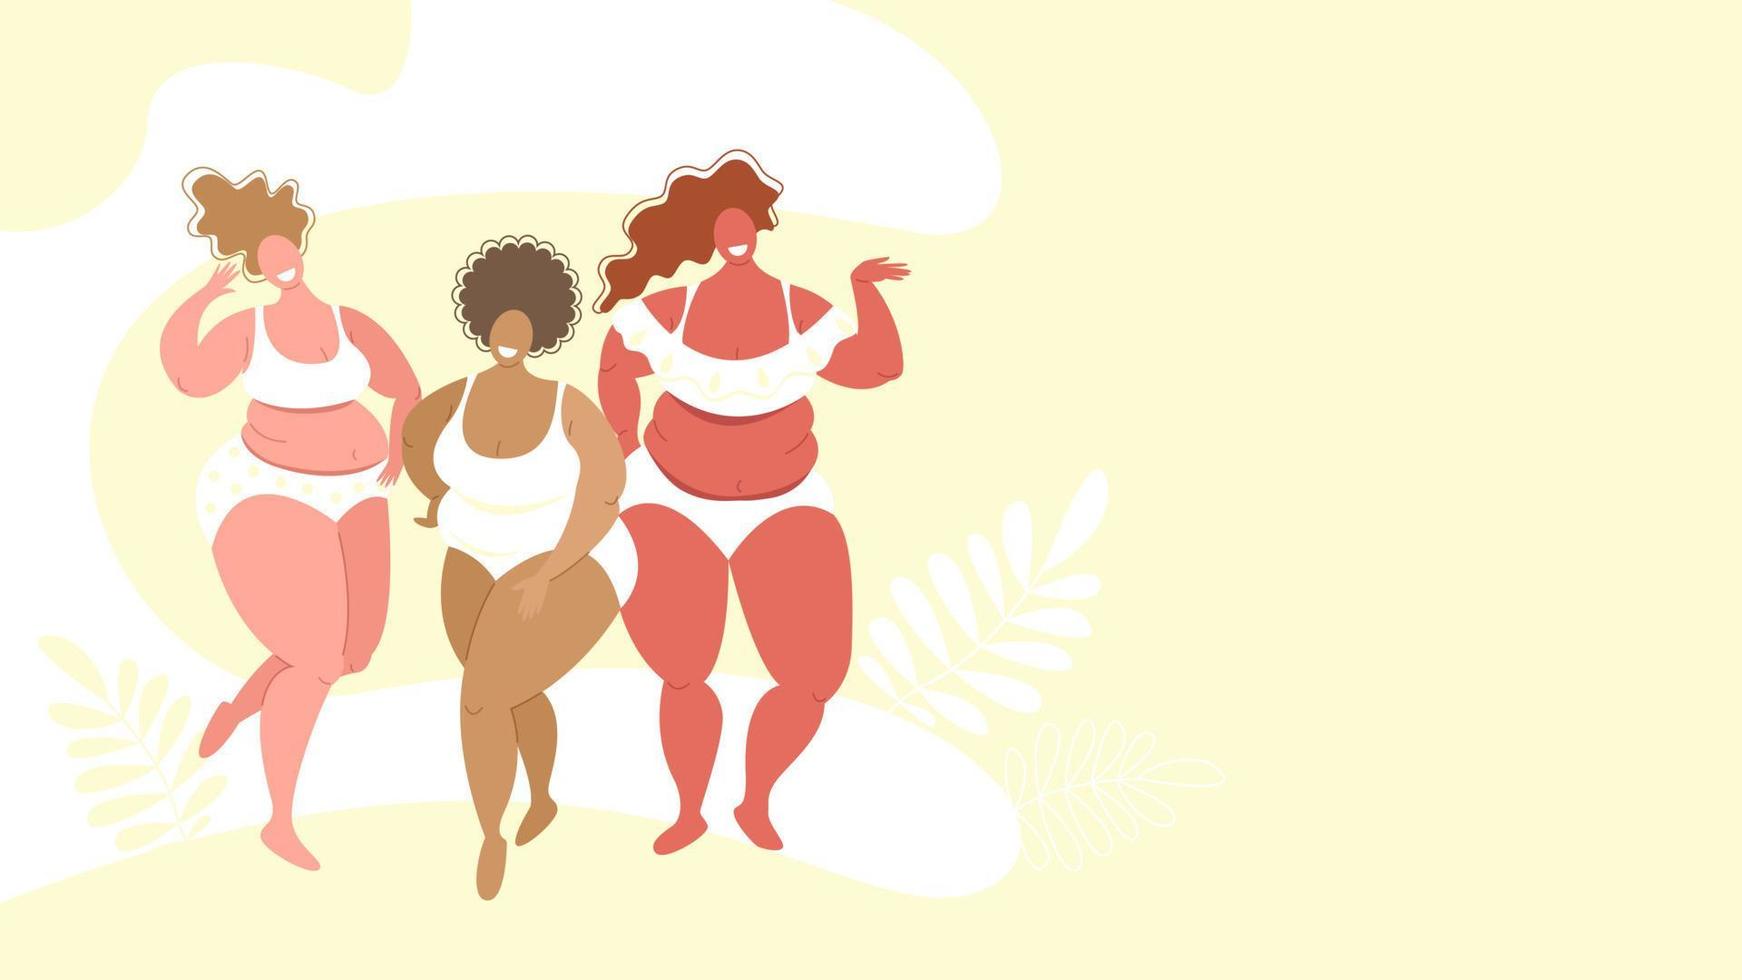 mujeres de talla grande de diferentes razas en trajes de baño, el concepto de positividad corporal, amor por tu cuerpo. banner con espacio de copia. ilustración de stock vectorial en estilo plano. vector